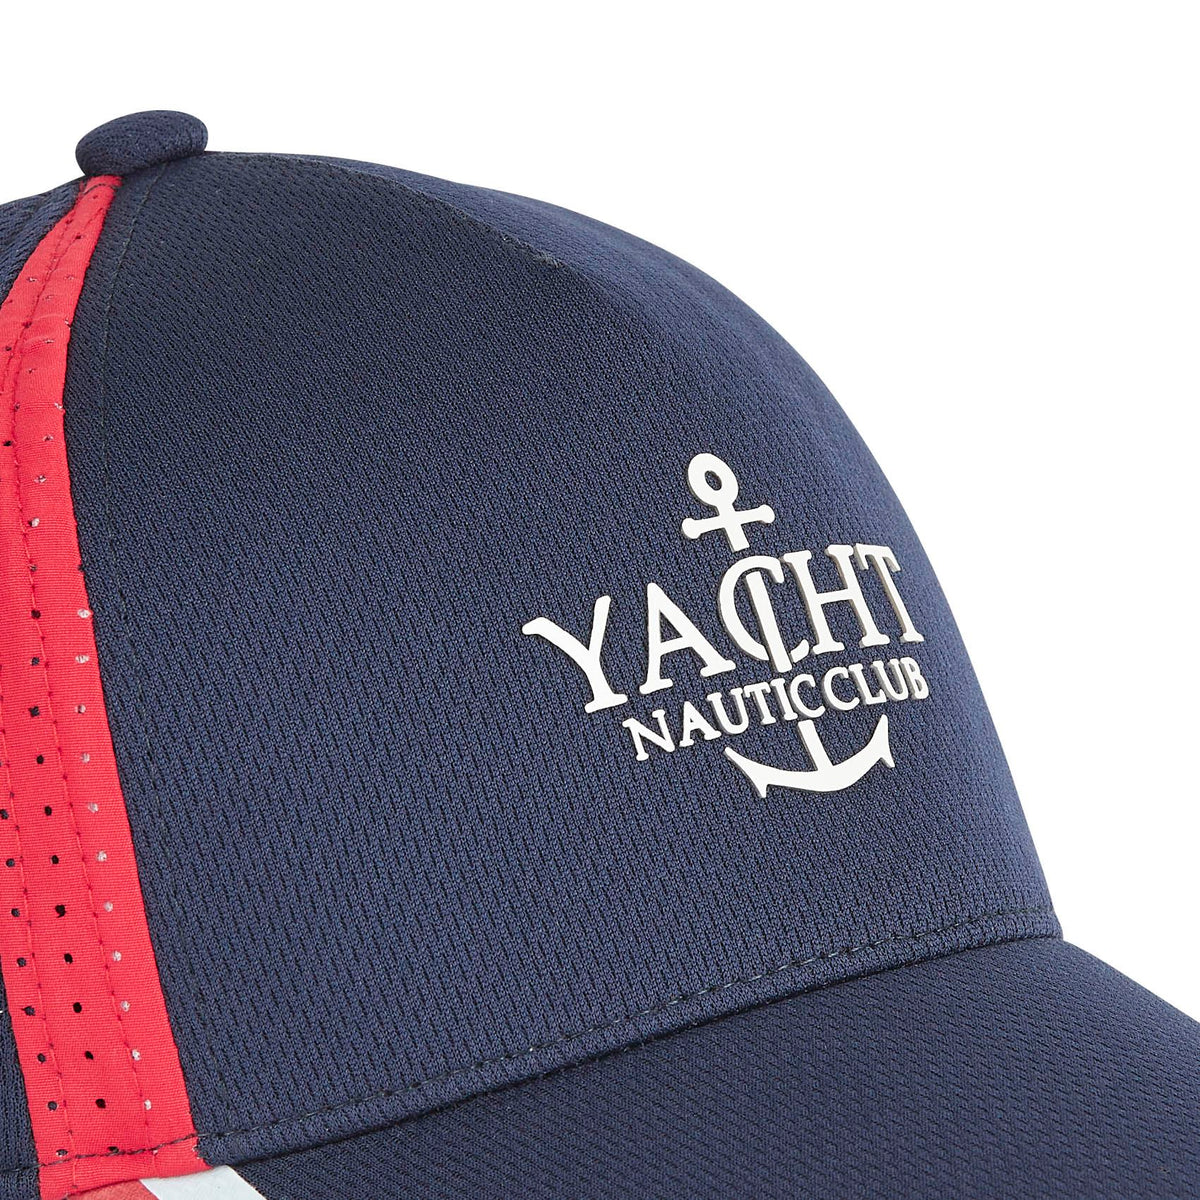 Yacht Club (Marine)